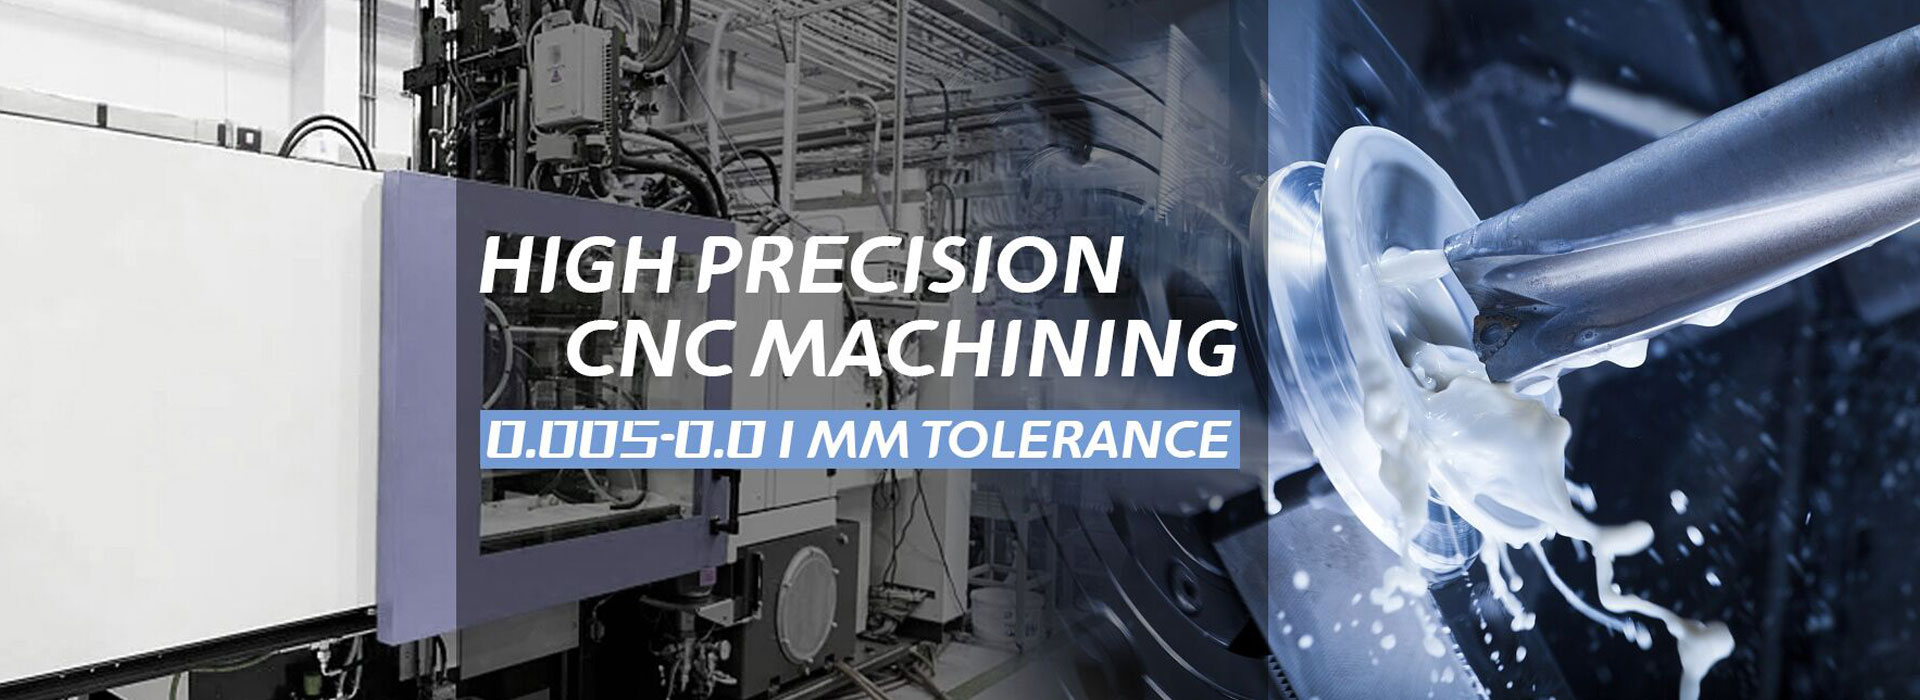 Mataas na Precision CNC Machining